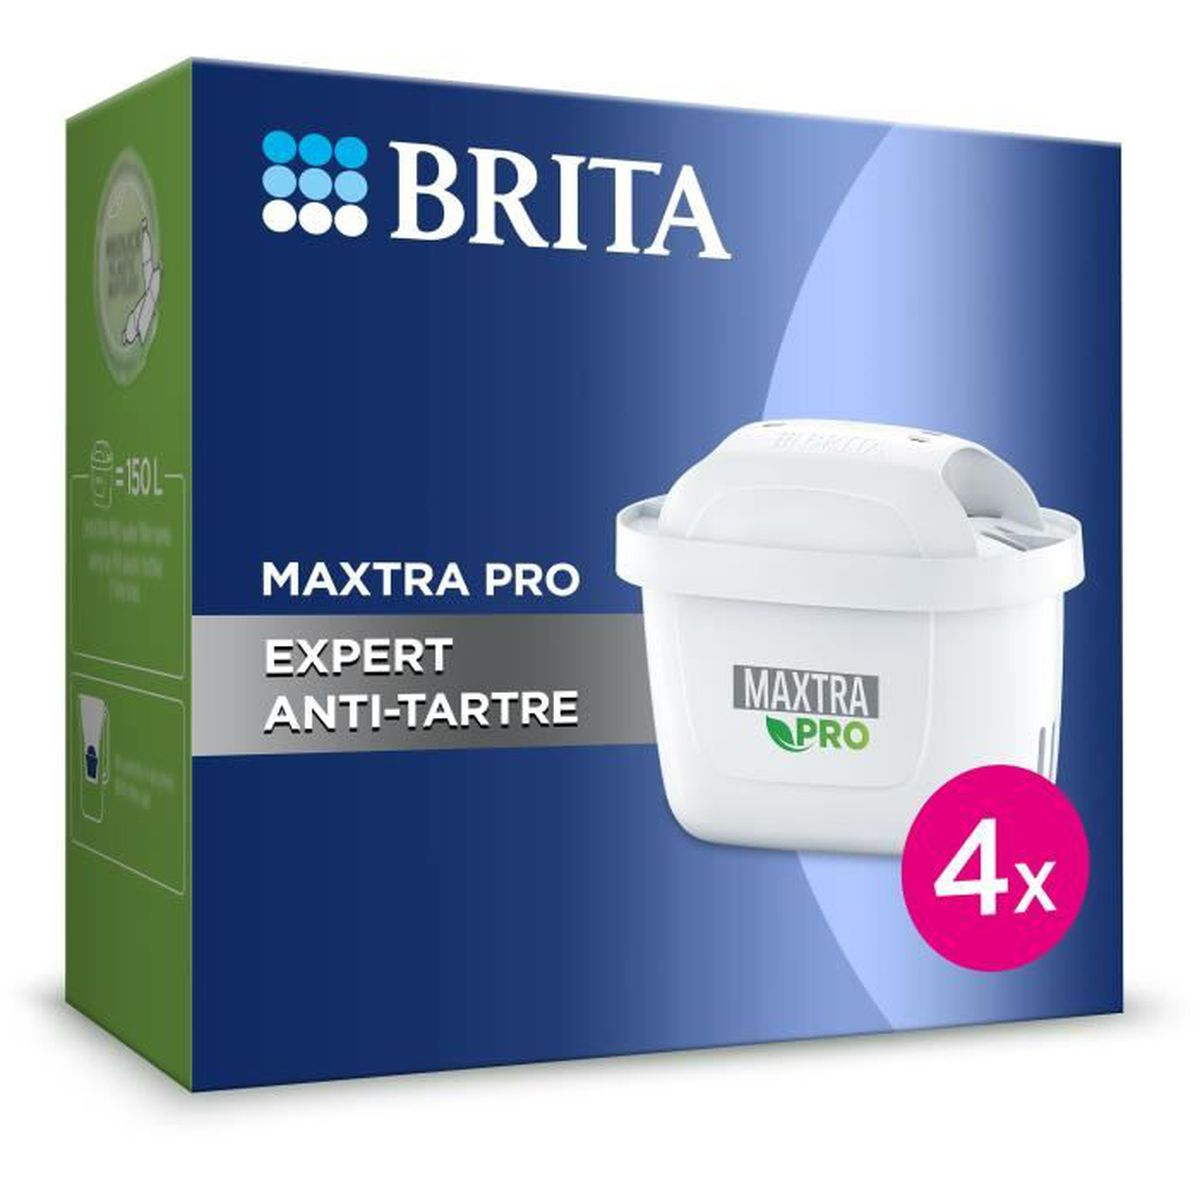 Pro 4 BRITA Maxtra Kartusche